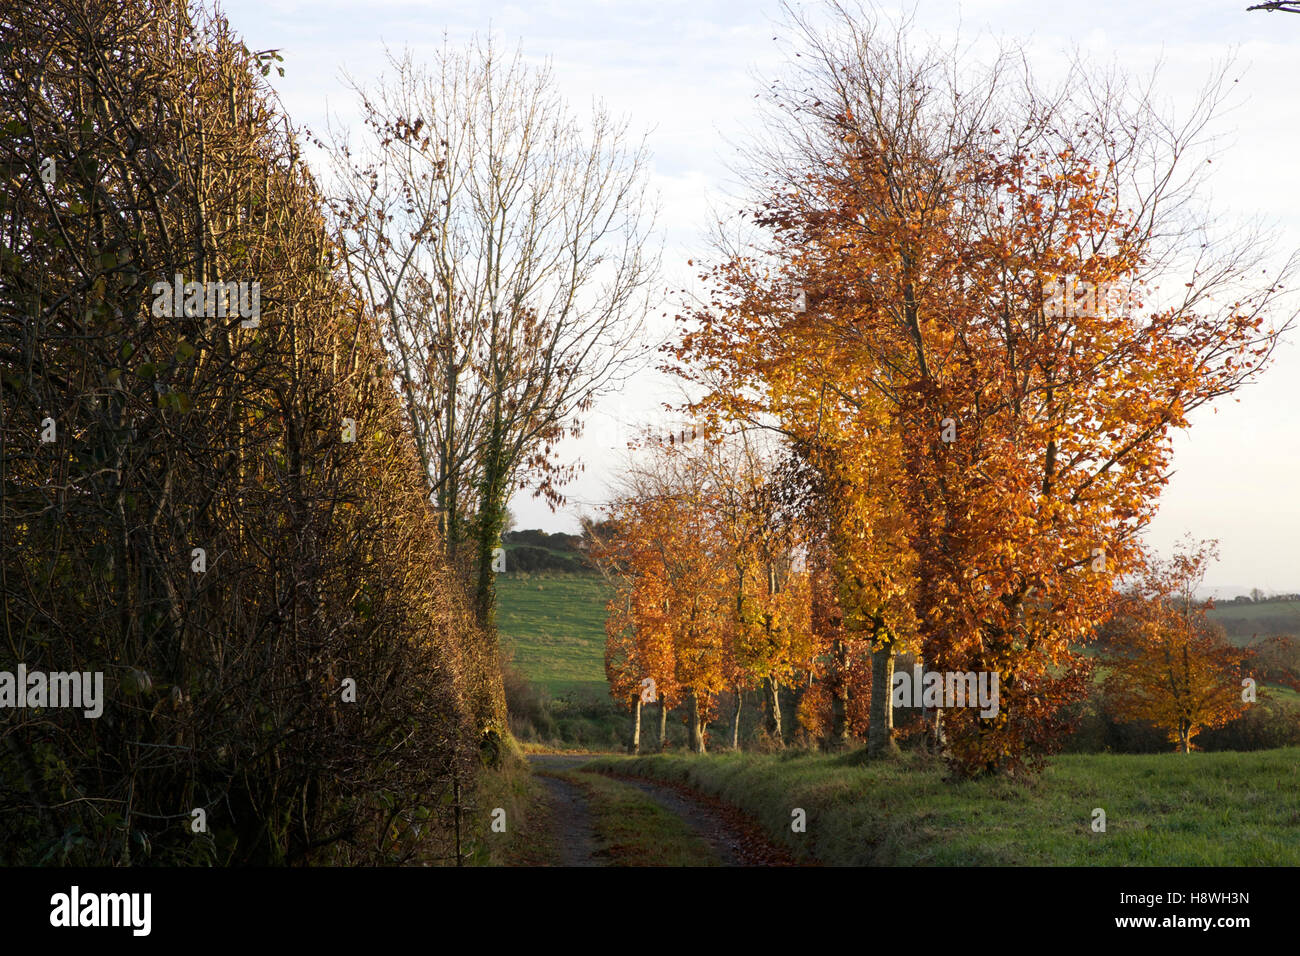 Beech trees on the lane in autumn Stock Photo